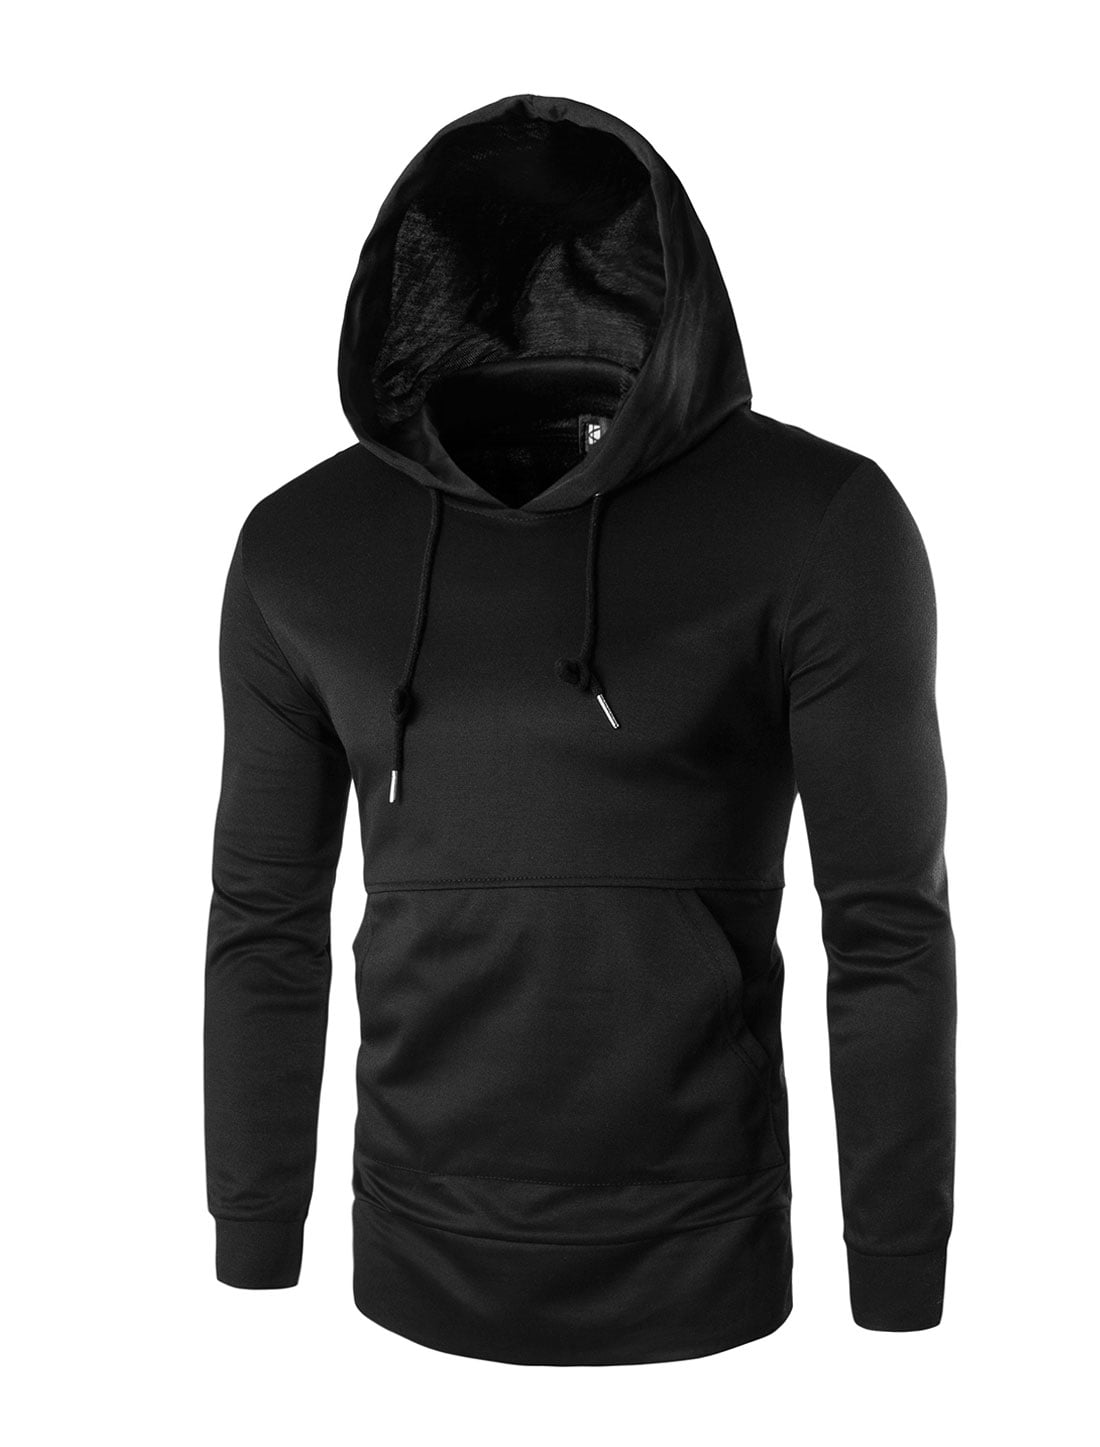 Men Kangaroo Pocket Zipper Sides Drawstring Hooded Sweatshirt Black S ...